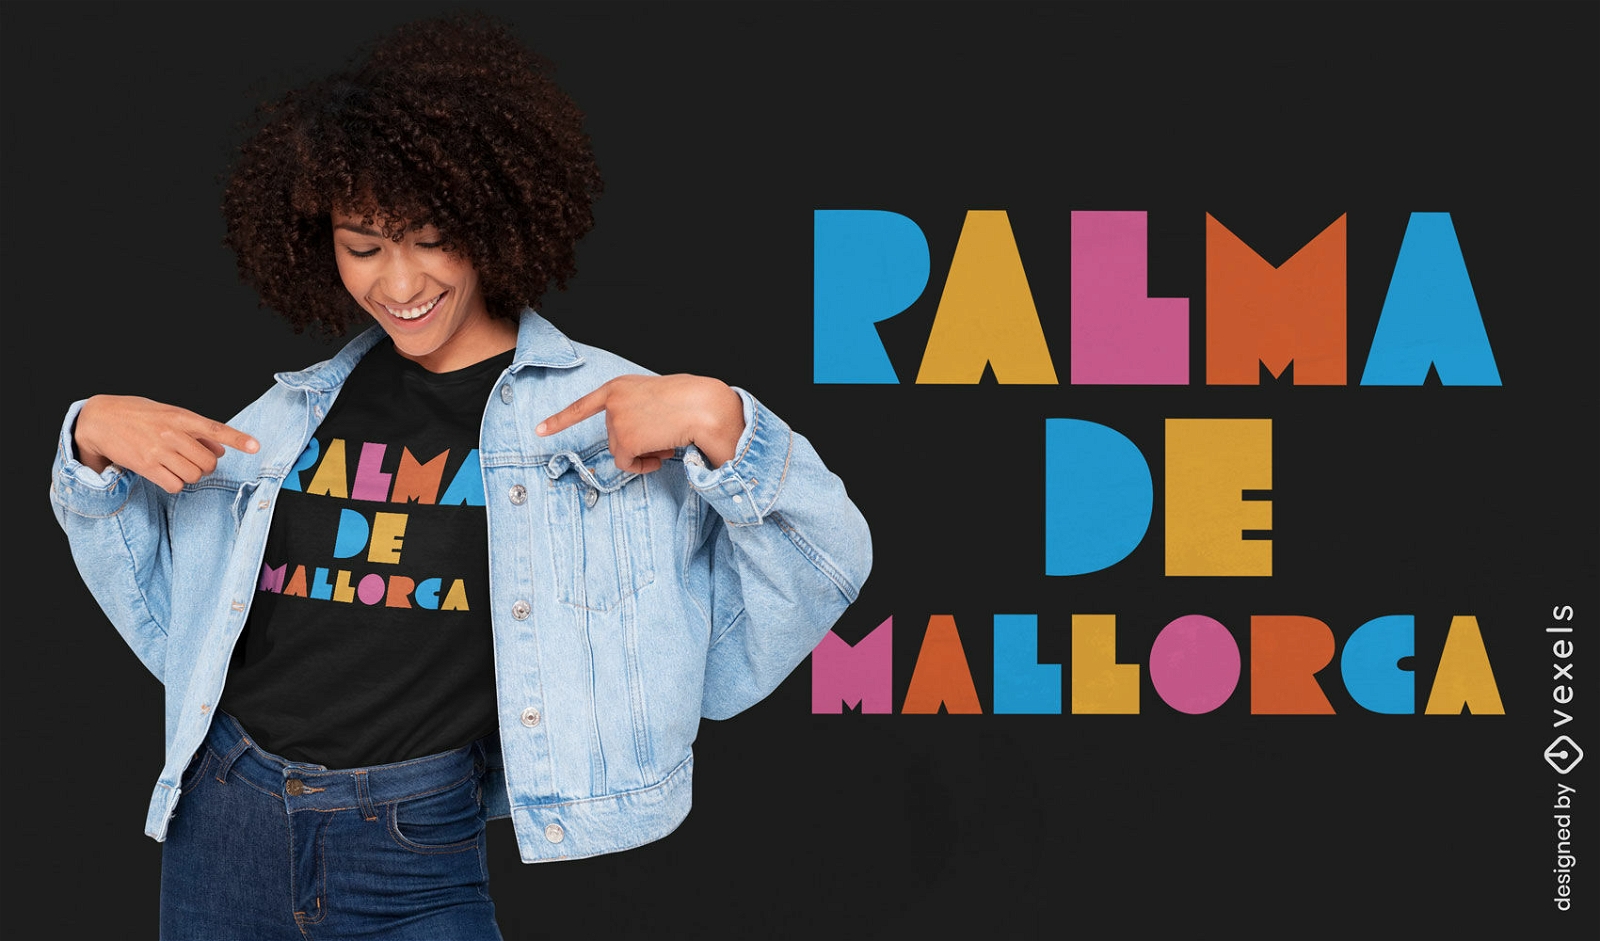 Palma De Mallorca t-shirt design